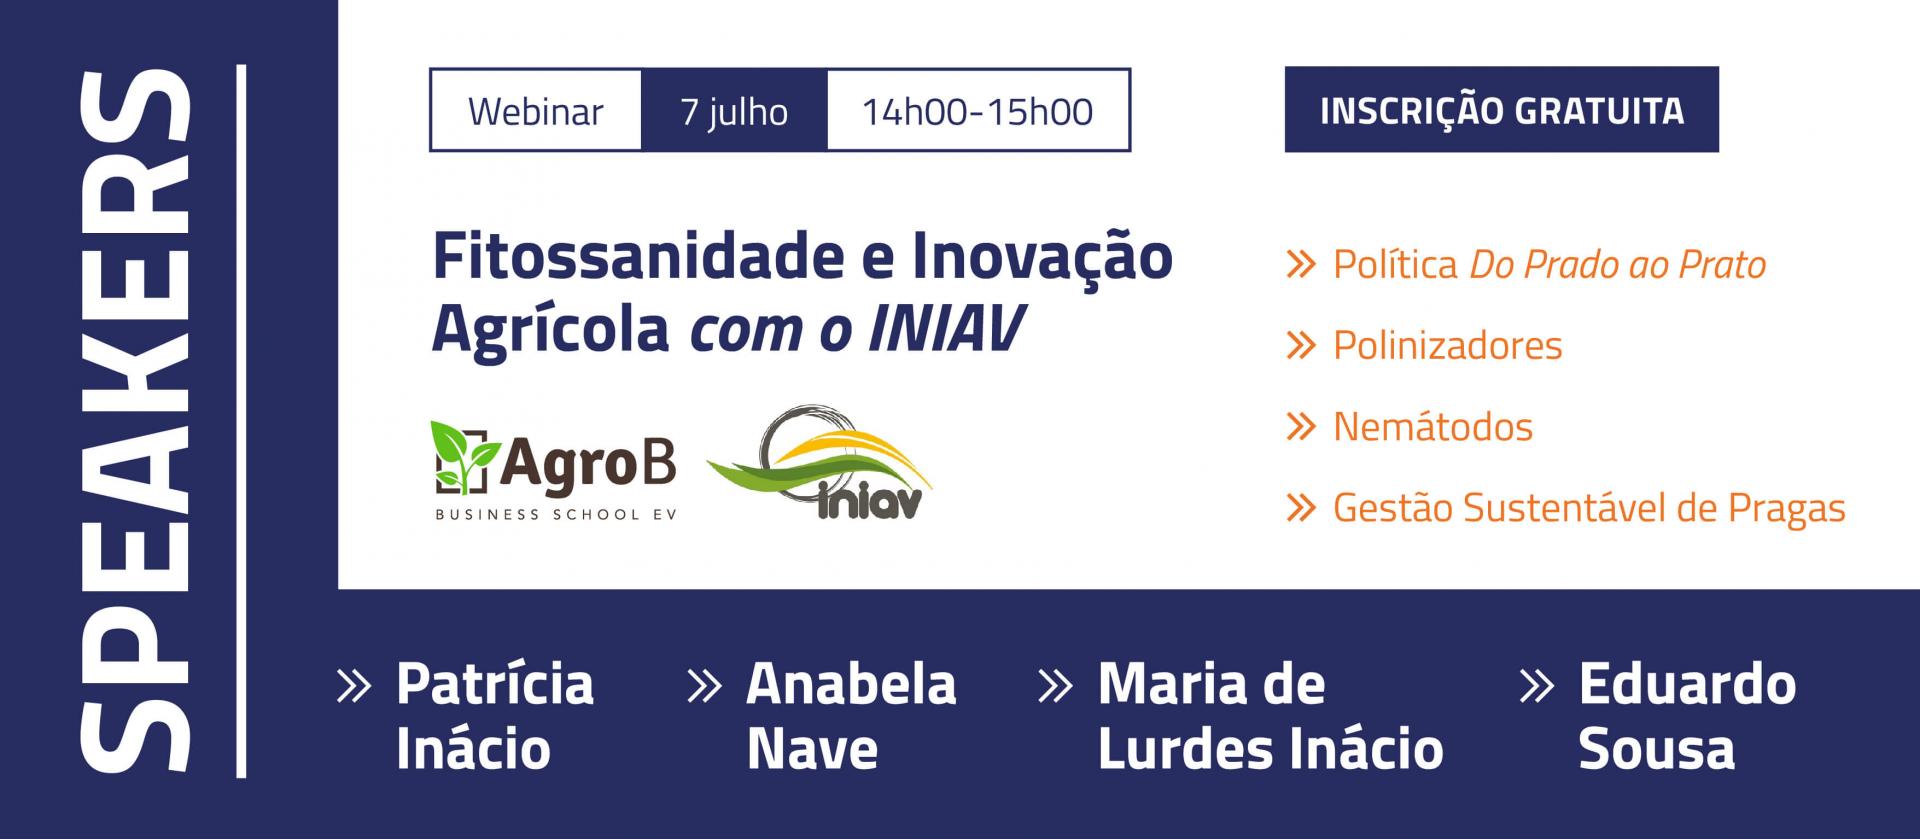 Fitossanidade e Inovação Agrícola com o INIAV | Webinar | AgroB